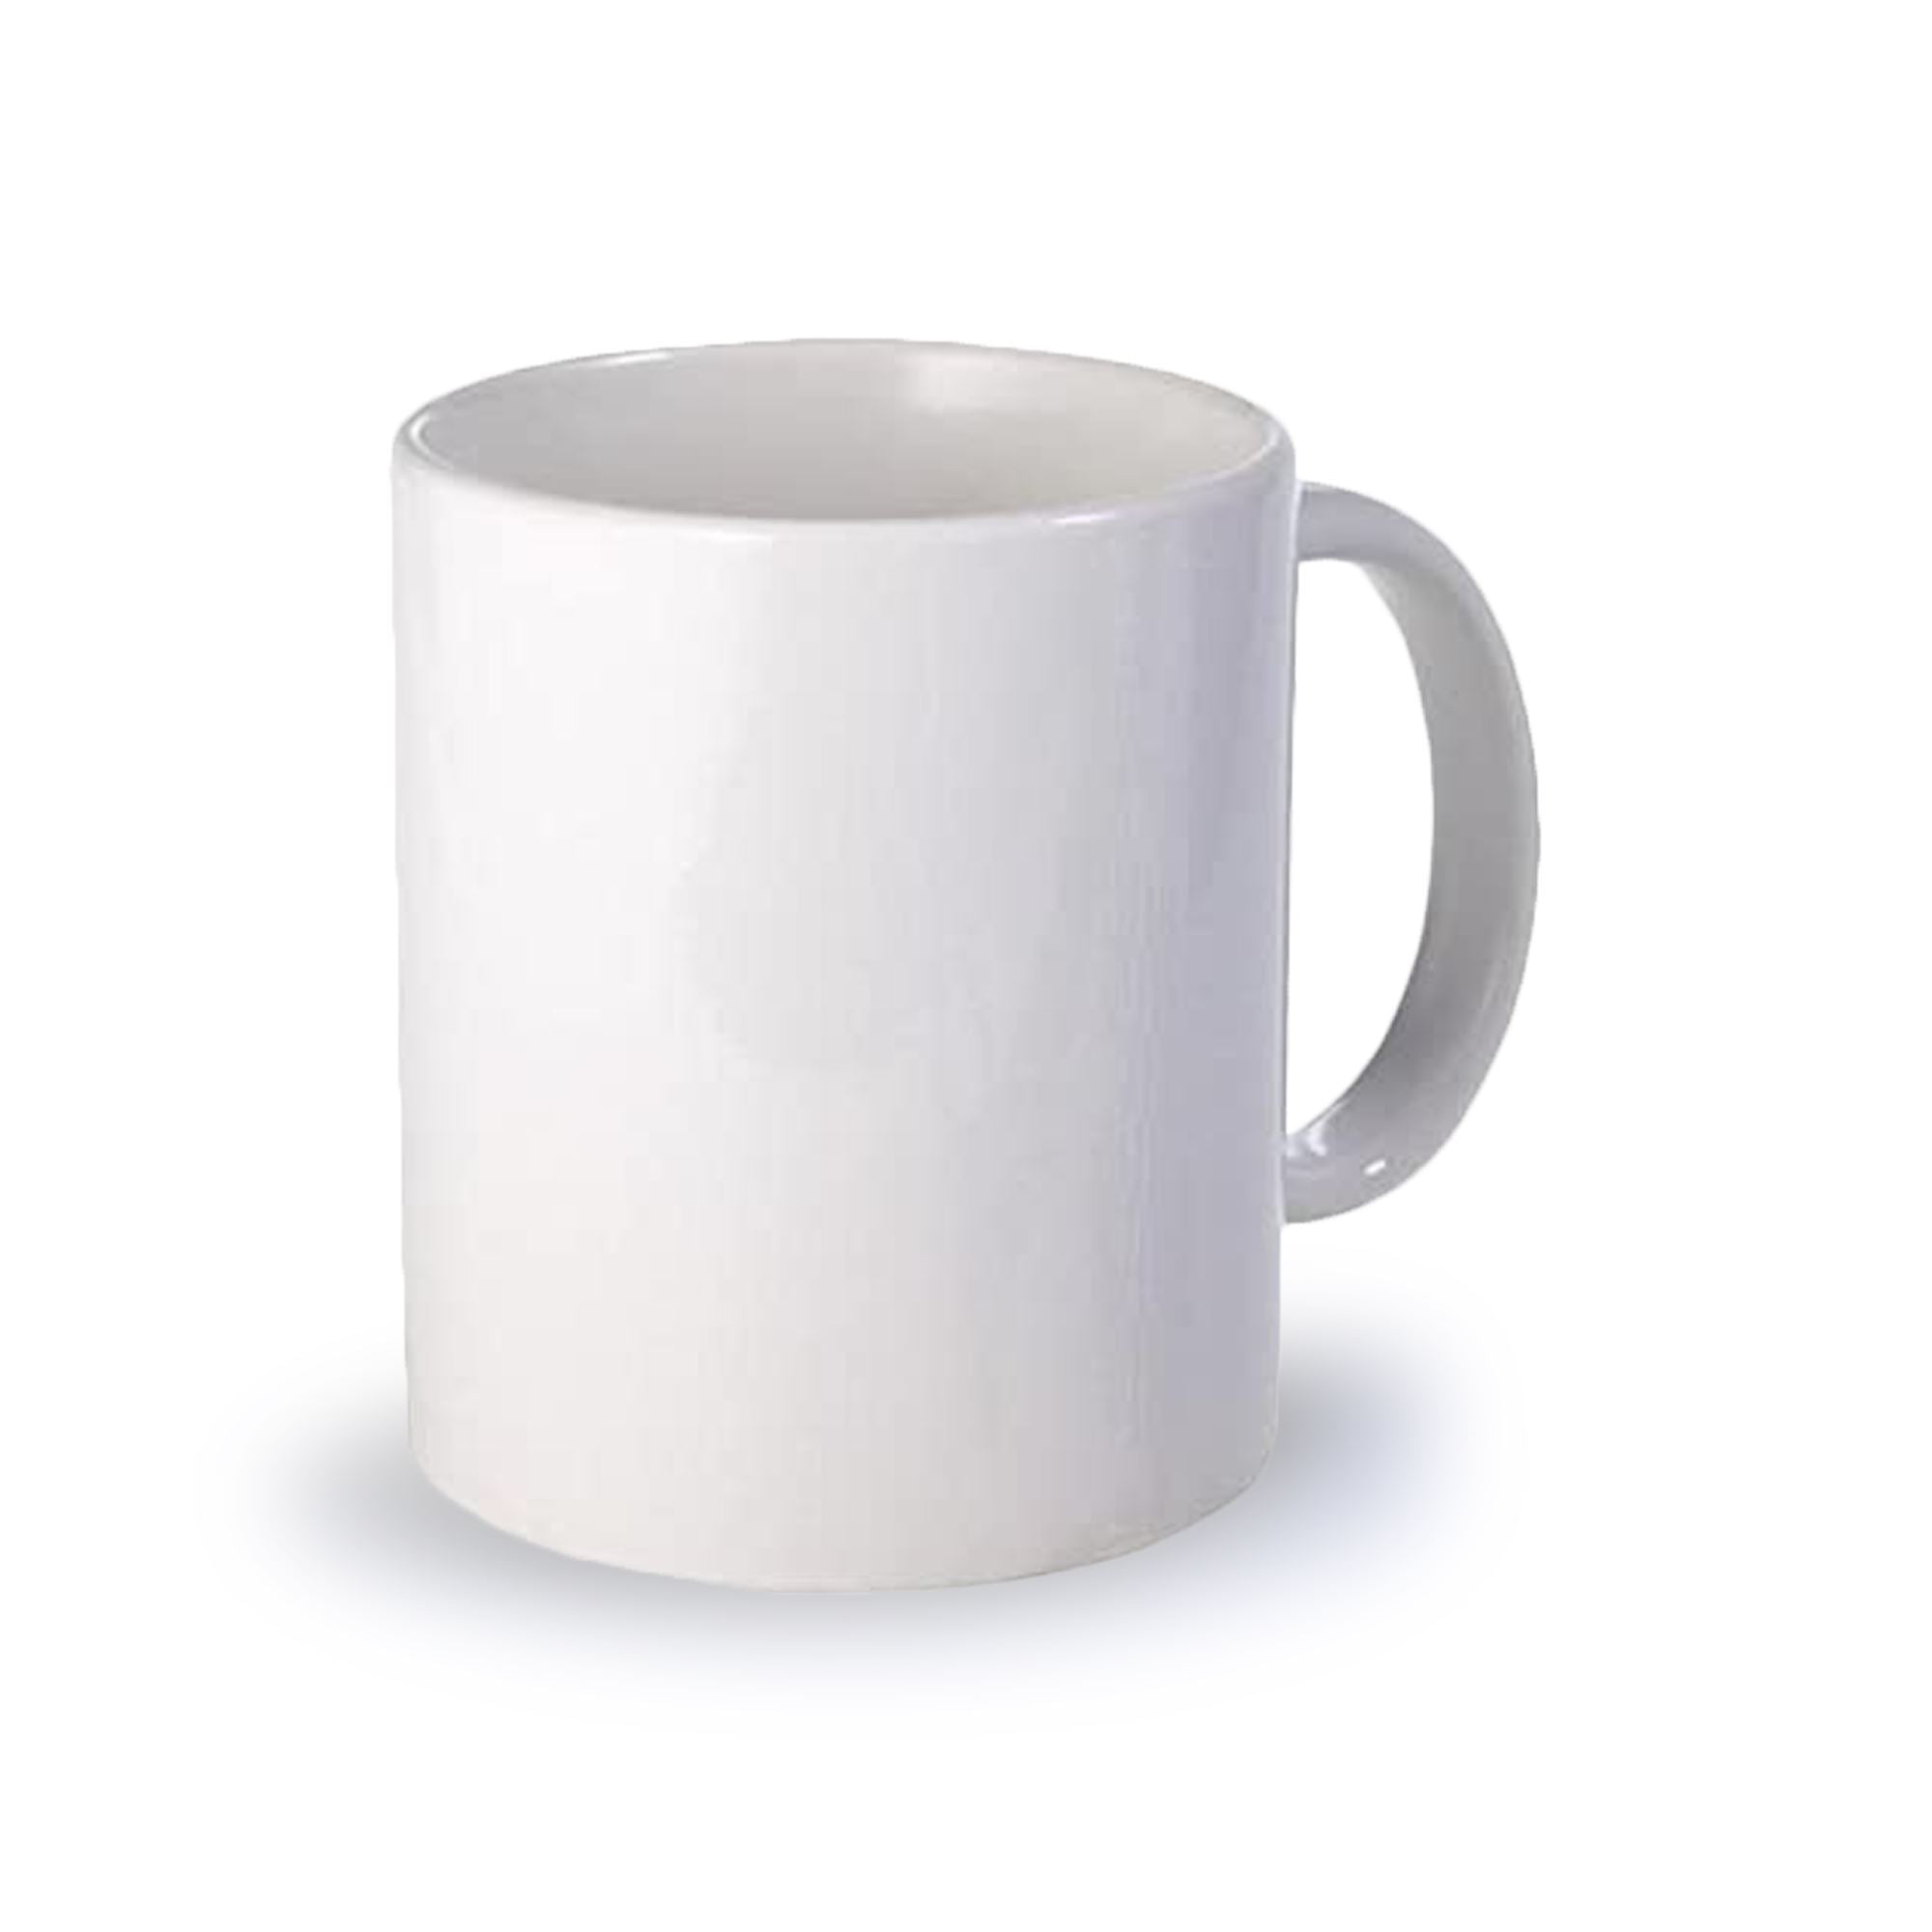 Rainbowtie Sublimation Mugssublimation Mugs Blank 11oz Sublimation Coffee Mugs, White Coated Ceramic Cup - Set of 12